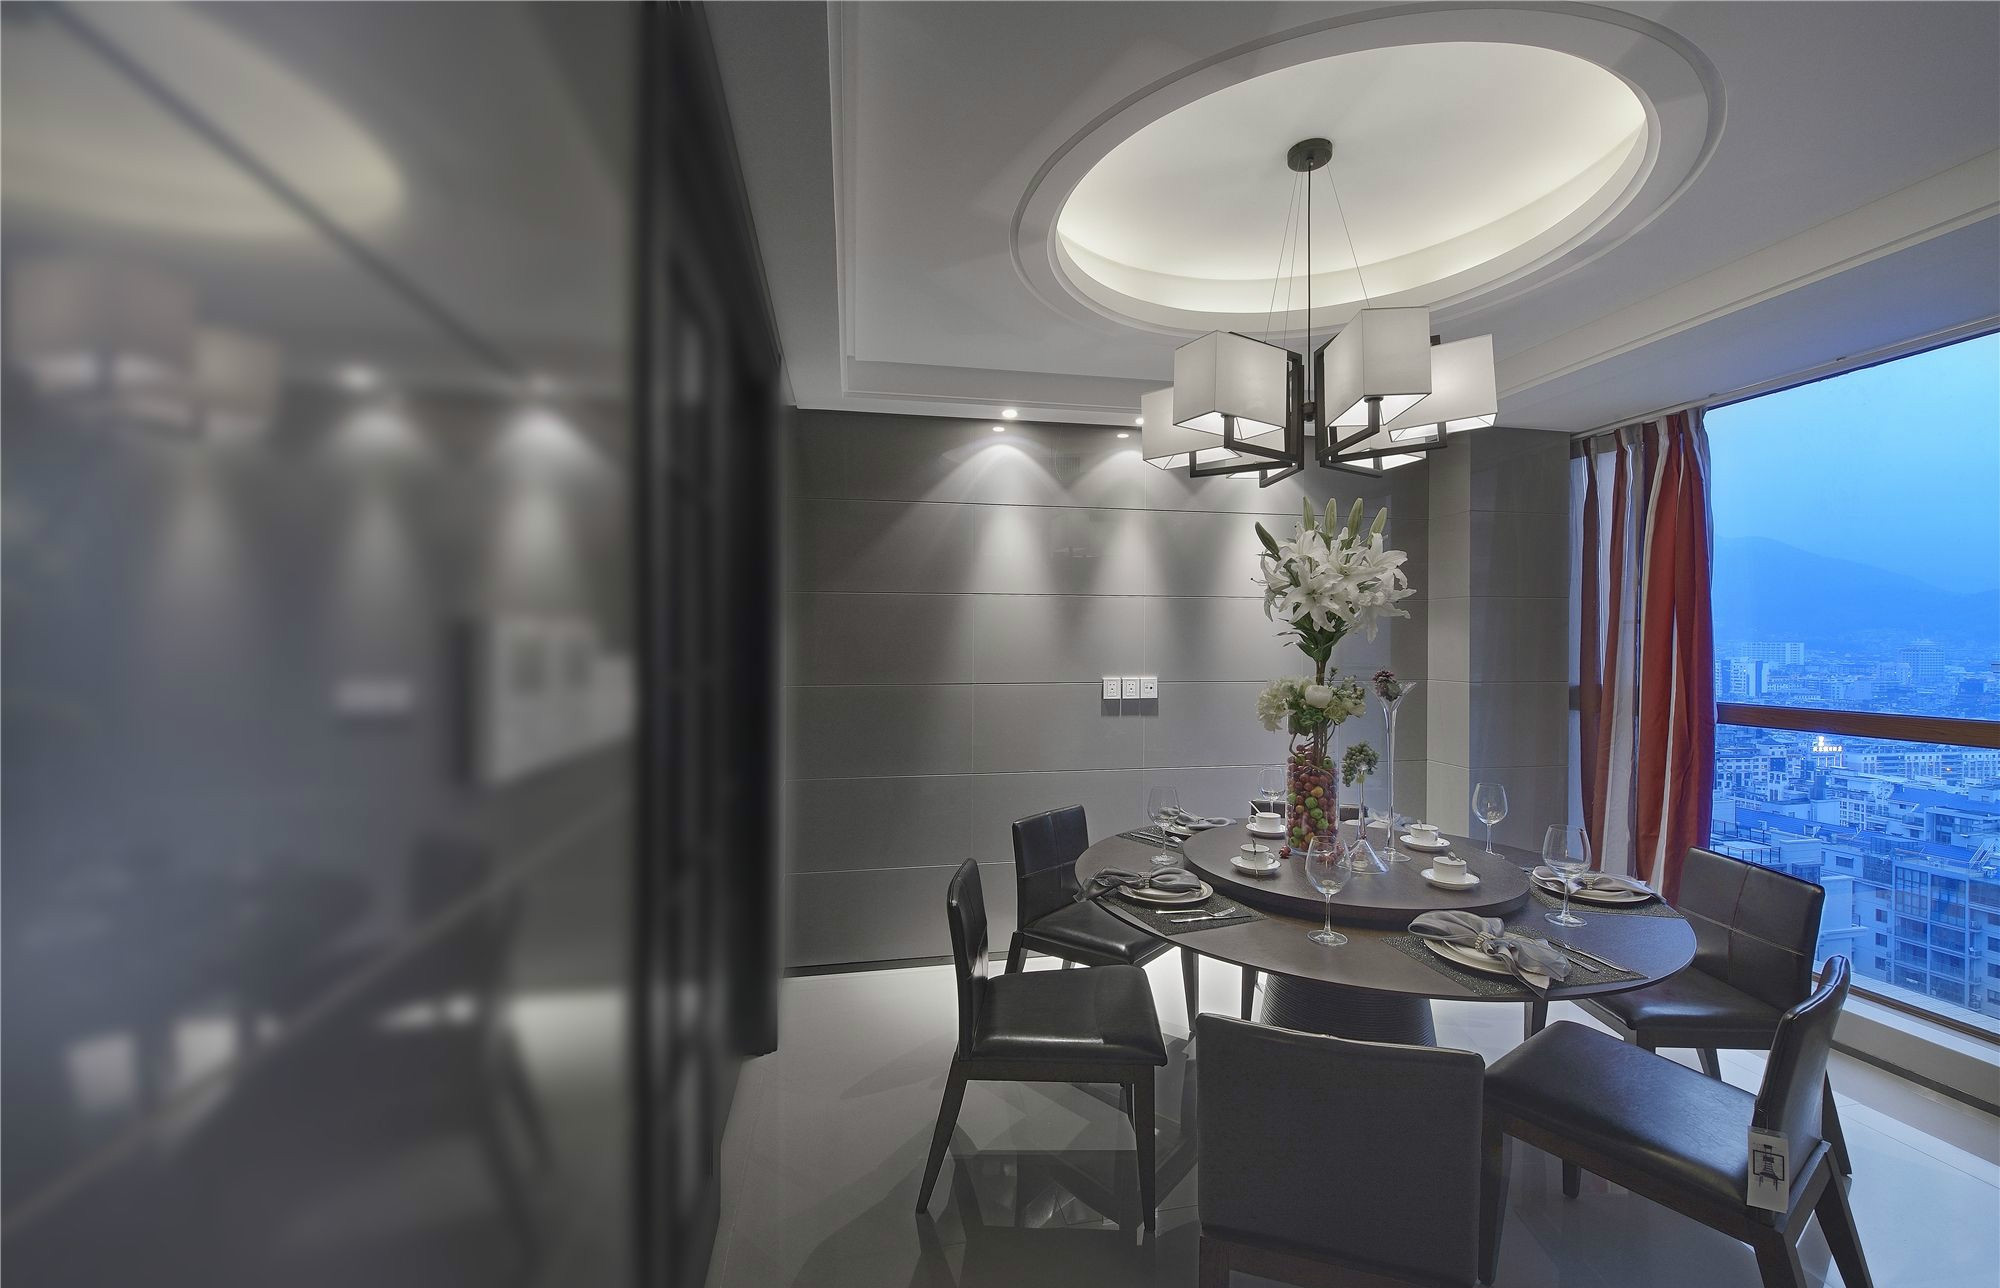 餐厅灰色的餐桌椅结合精美的吊灯元素， 满足了主人追求工业风生活的态度。